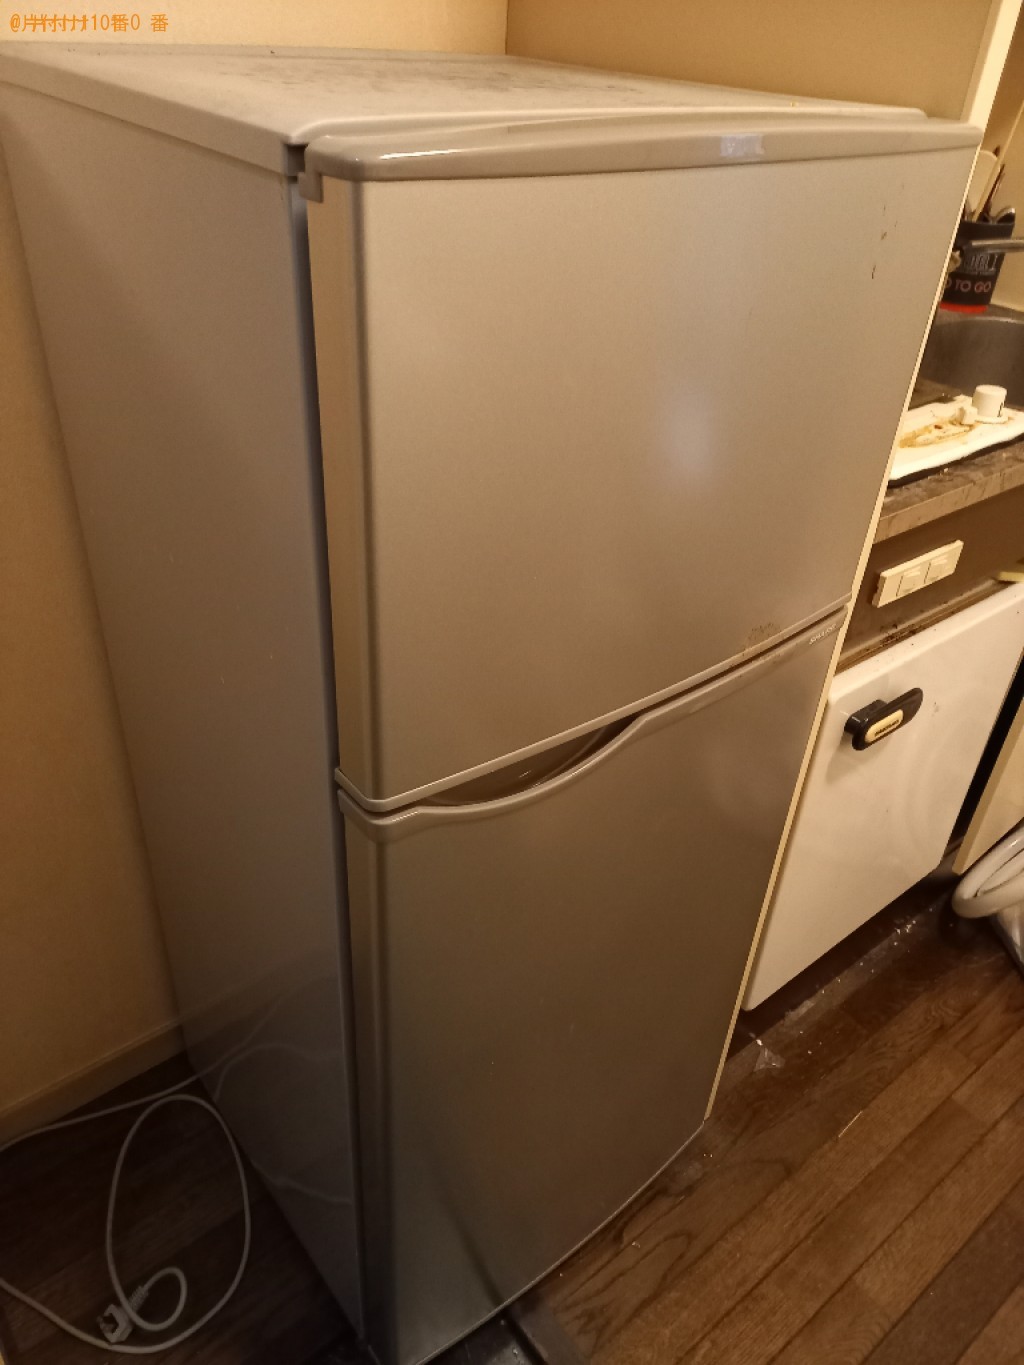 【練馬区旭町】170L未満冷蔵庫の出張不用品回収・処分ご依頼